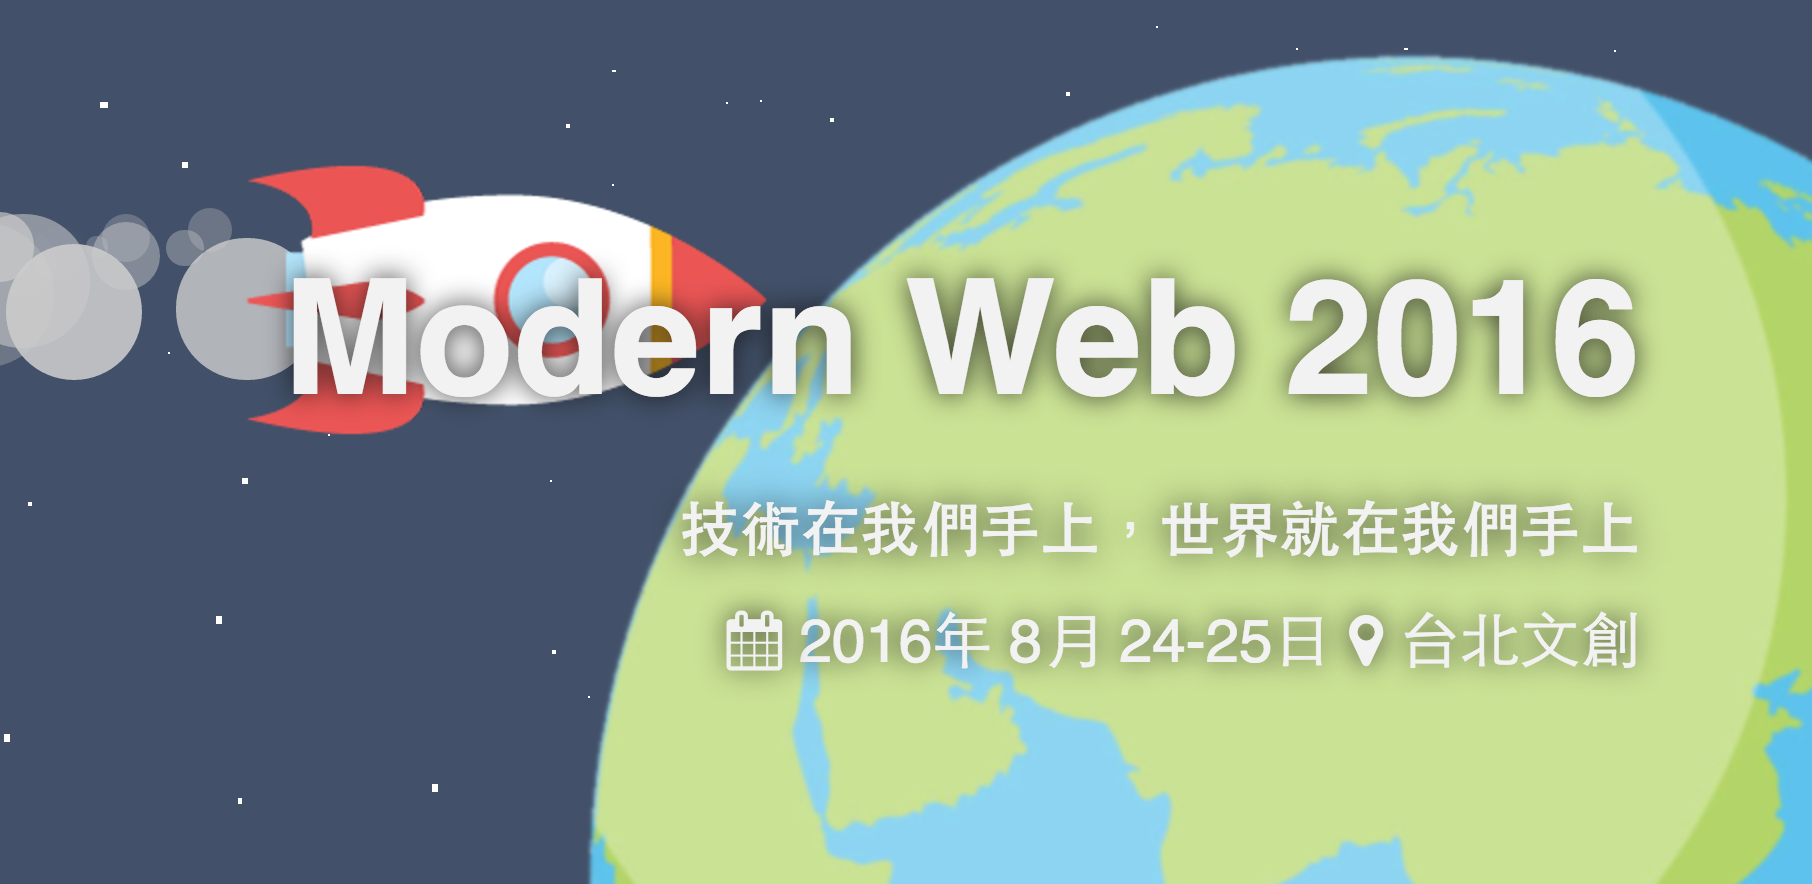 Modern Web 2016